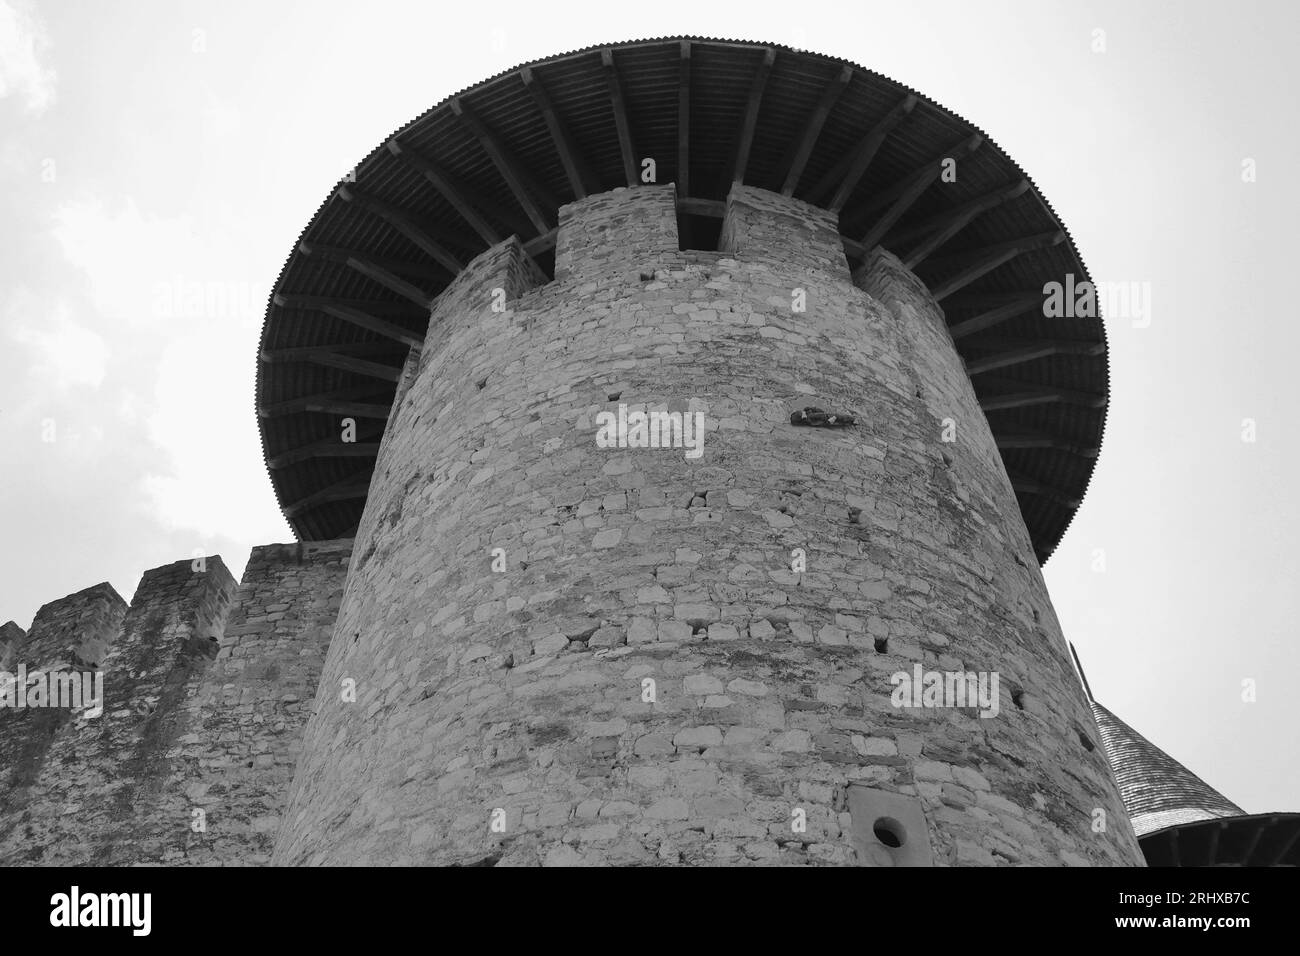 Blick auf die mittelalterliche Festung in Soroca, Republik Moldau. Das Fort wurde 1499 vom moldauischen Prinzen Stephan dem Großen erbaut. Wurde 2015 renoviert Stockfoto